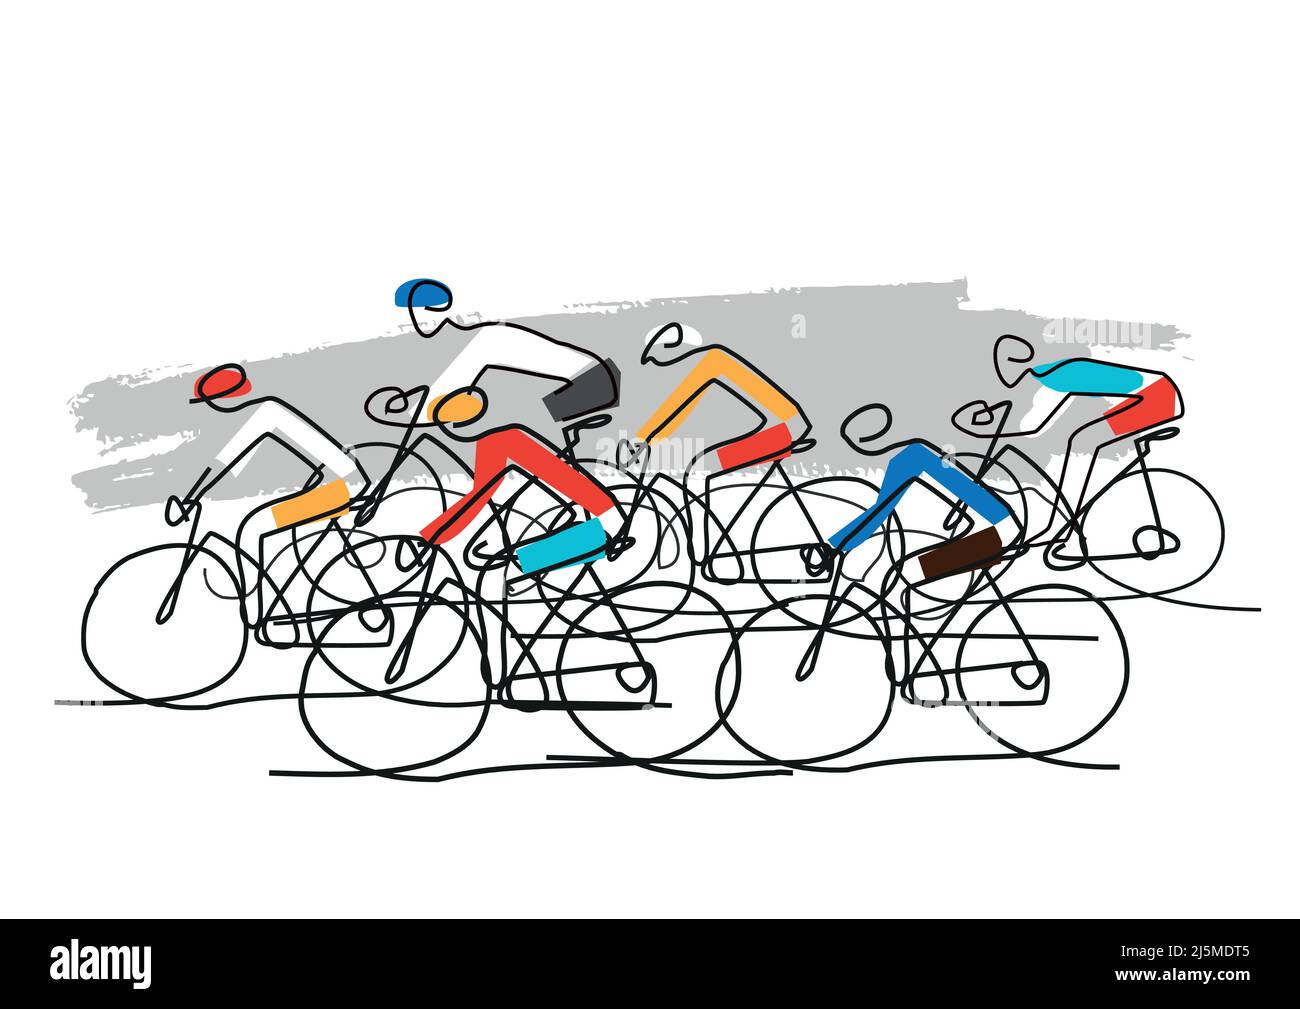 Radrennen, Linienkunst stilisierte Karikatur. Abbildung der Gruppe der Radfahrer auf der Straße. Fortlaufende Linienzeichnung. Vektor verfügbar. Stock Vektor